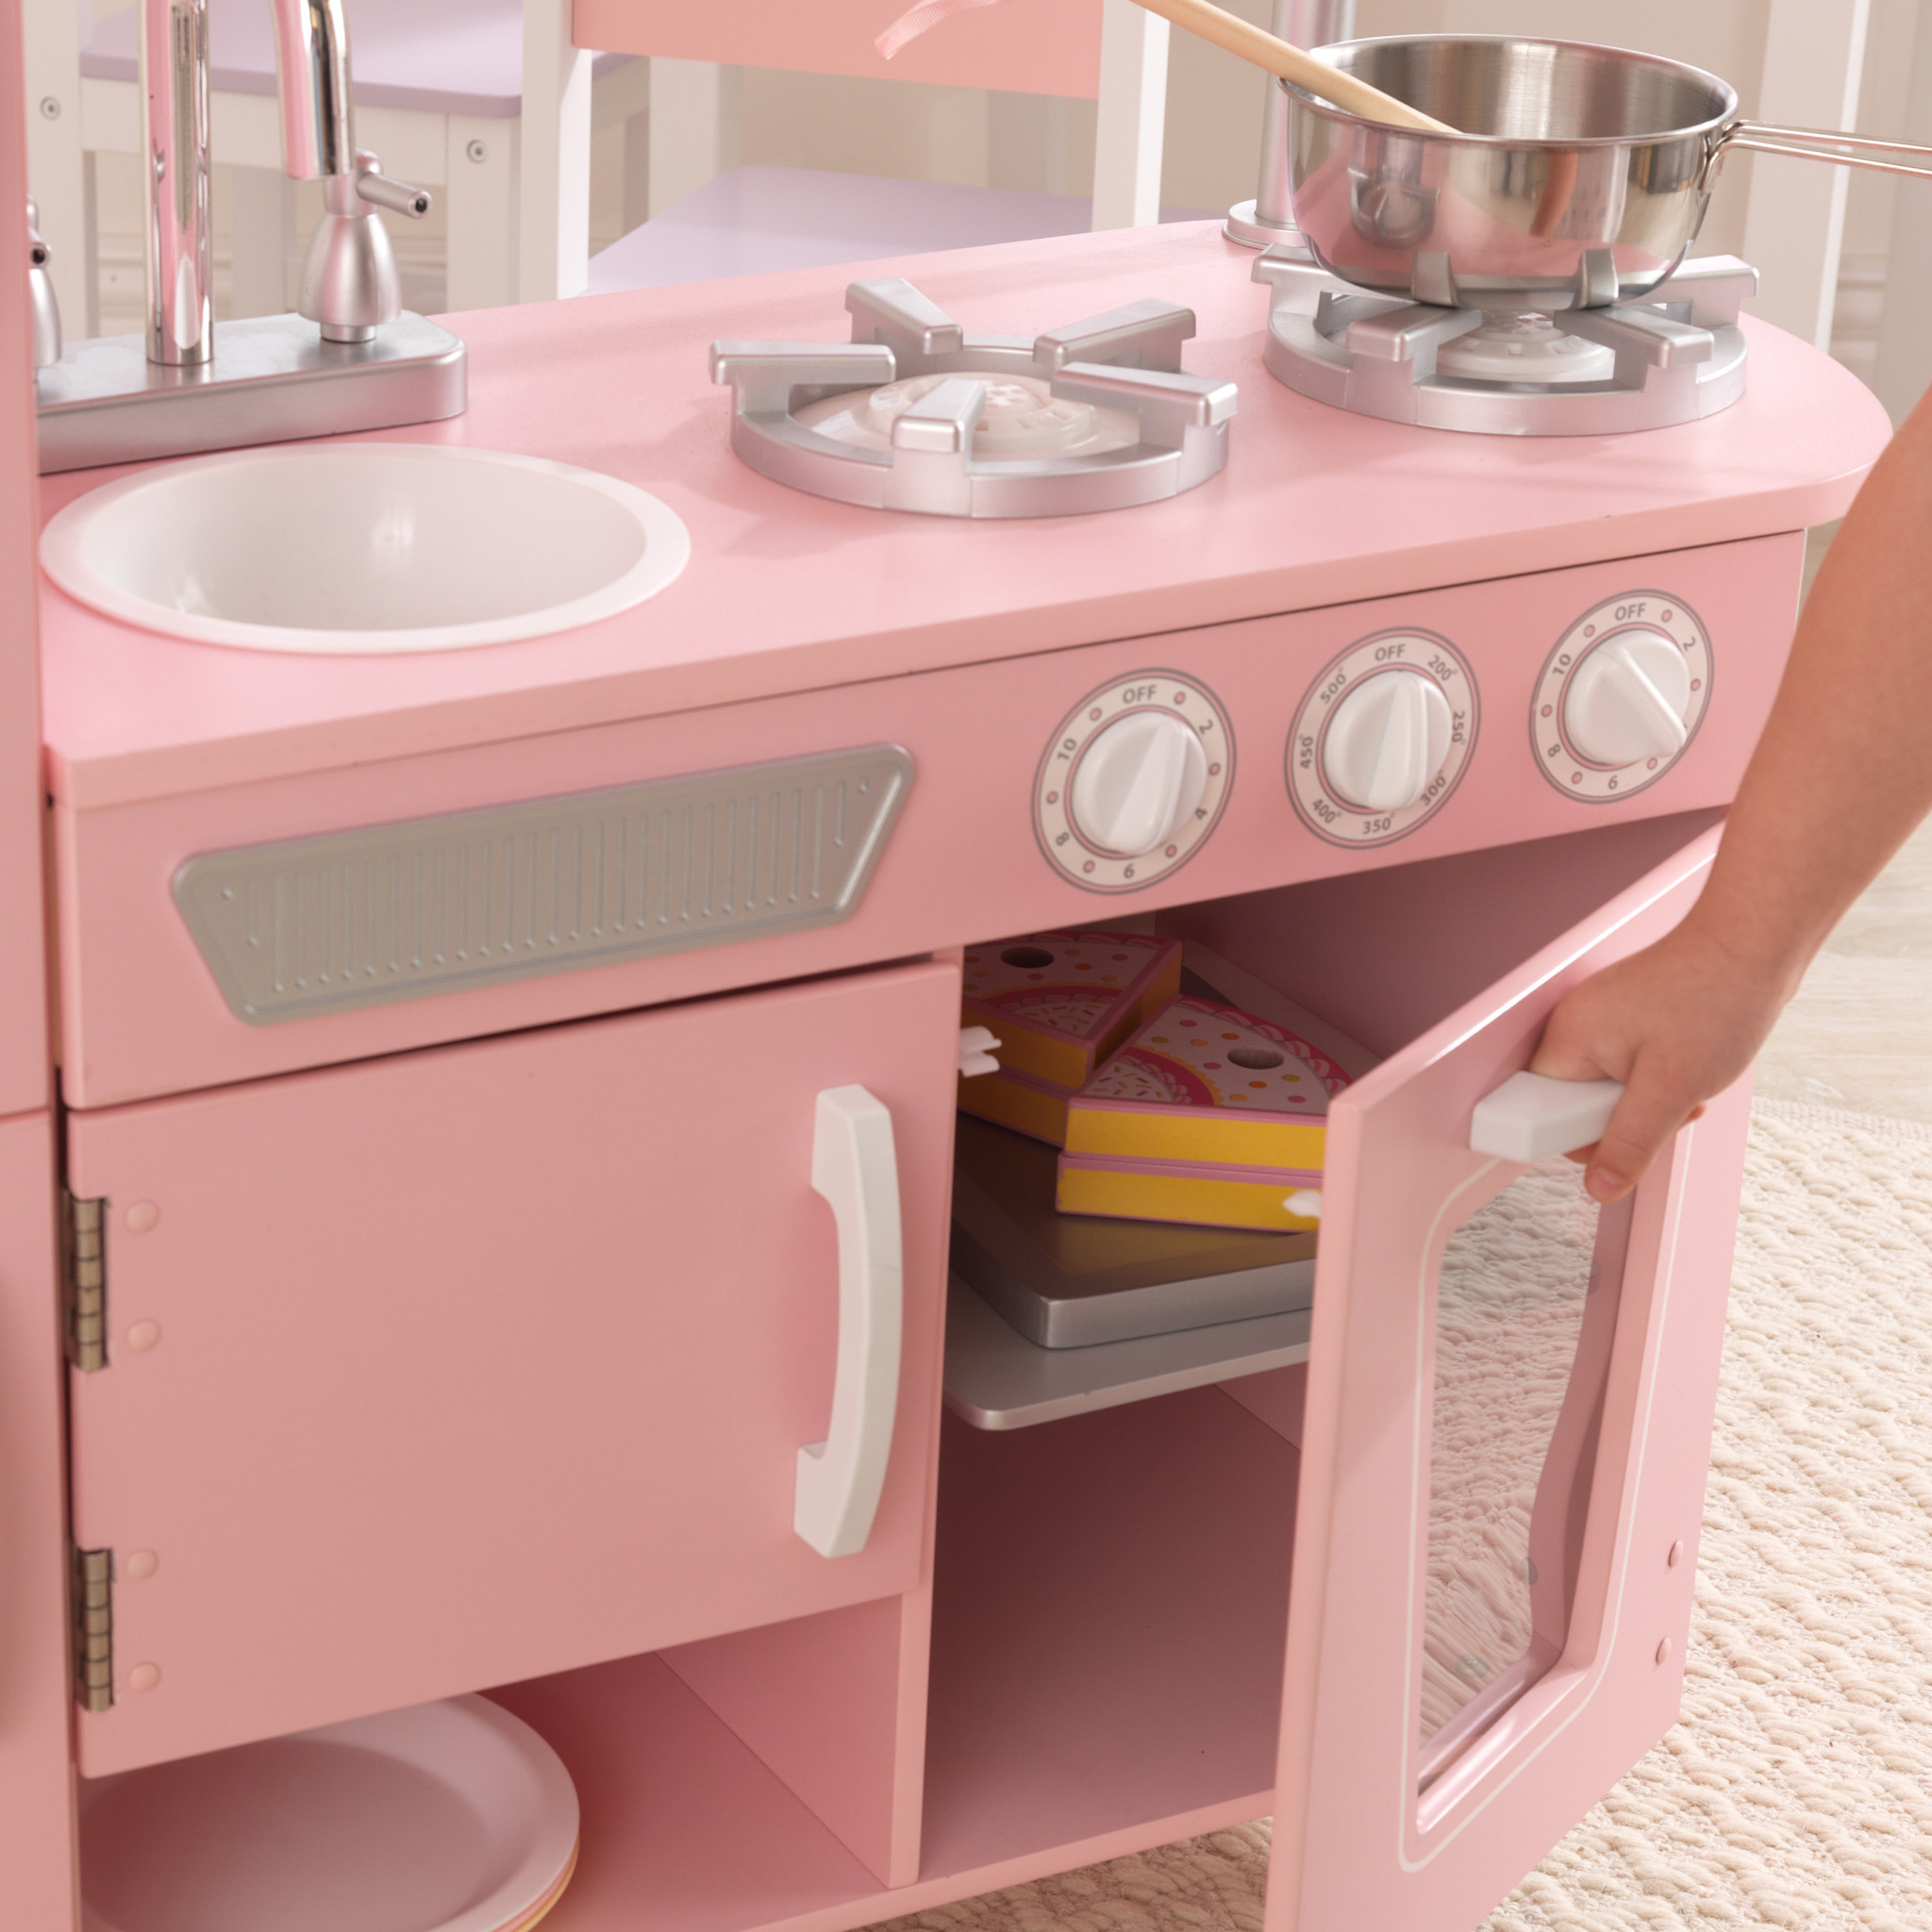 ontvangen Magazijn Slaapzaal Kinderkeuken Roze - Vintage retro keukentje voor kinderen - Kinderspel ®